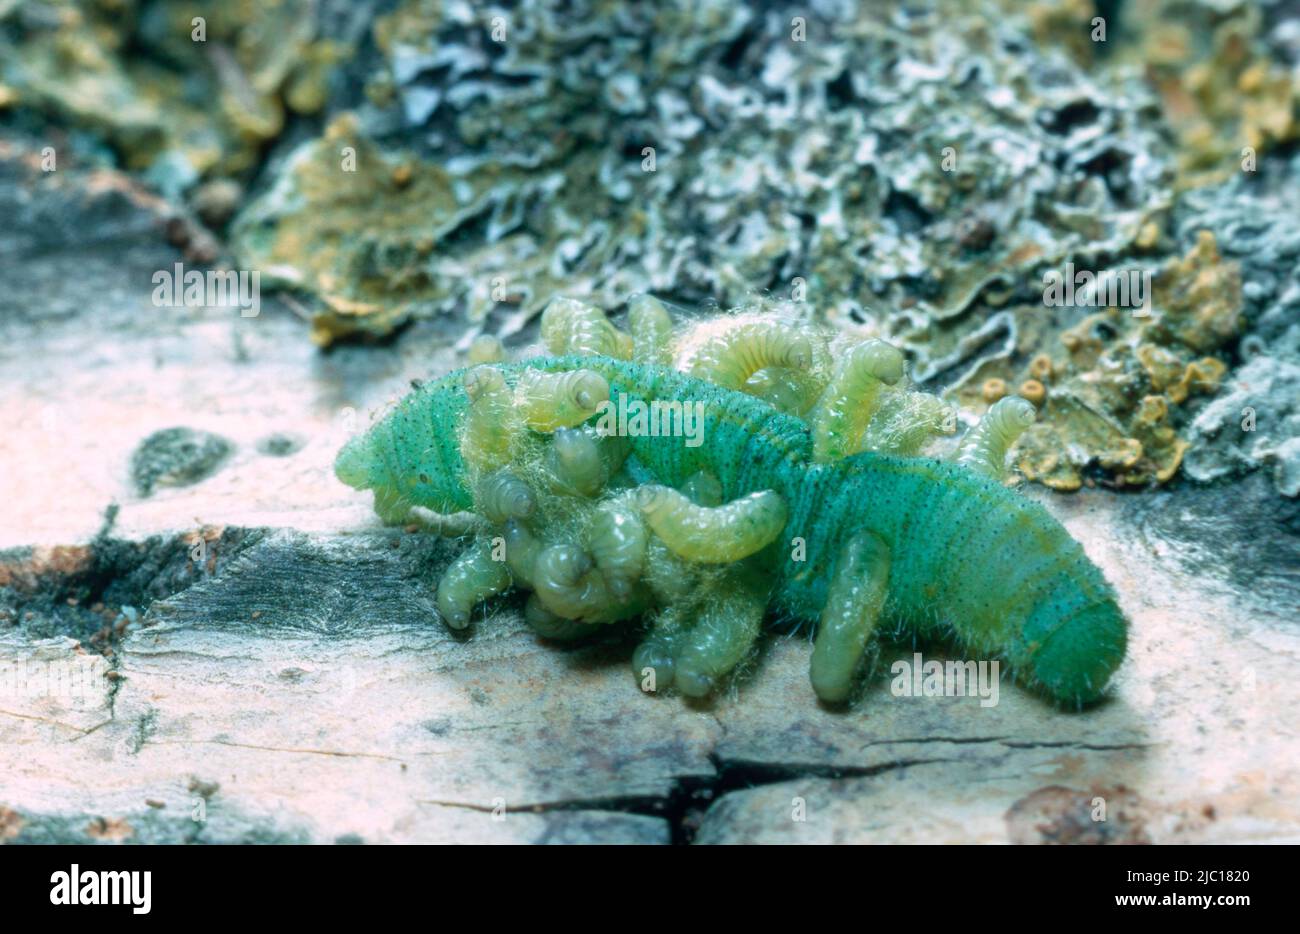 braconids, braconid wasps (Braconidae), larvae eating caterpillar, Germany Stock Photo